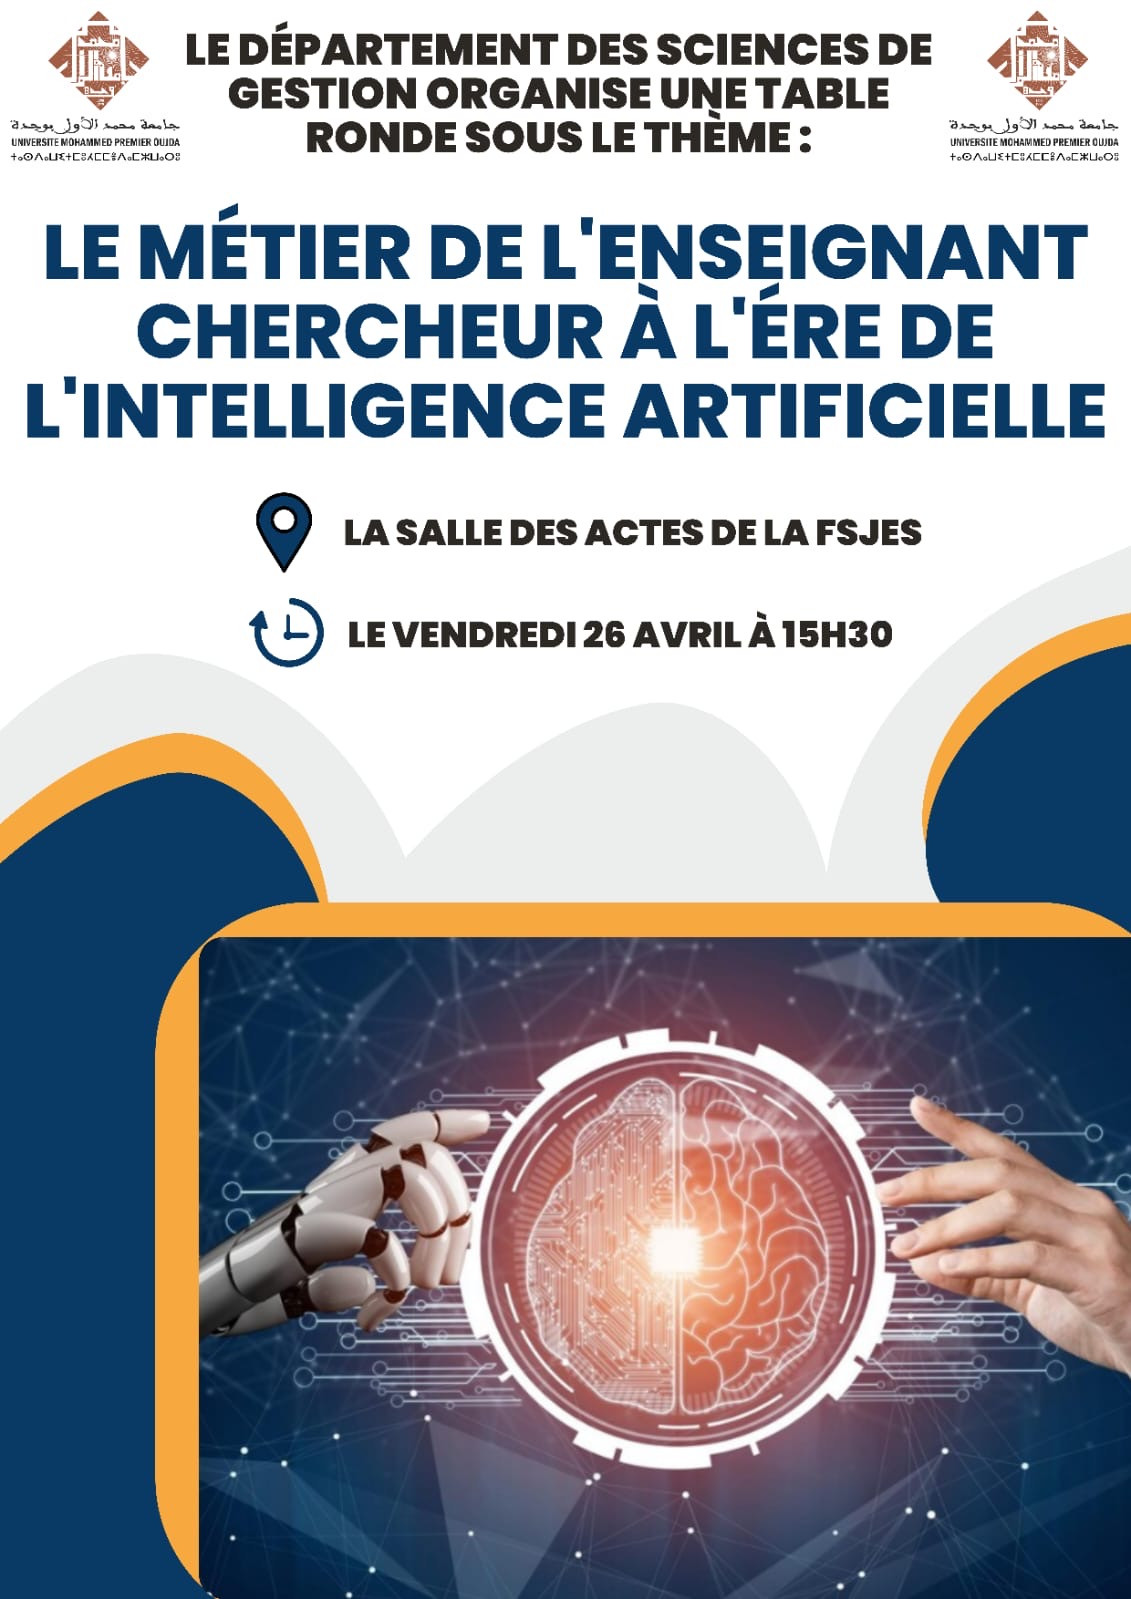 Table ronde sous thème: Le métier de l'enseignant chercheur à l'ère de l'intelligence artificielle